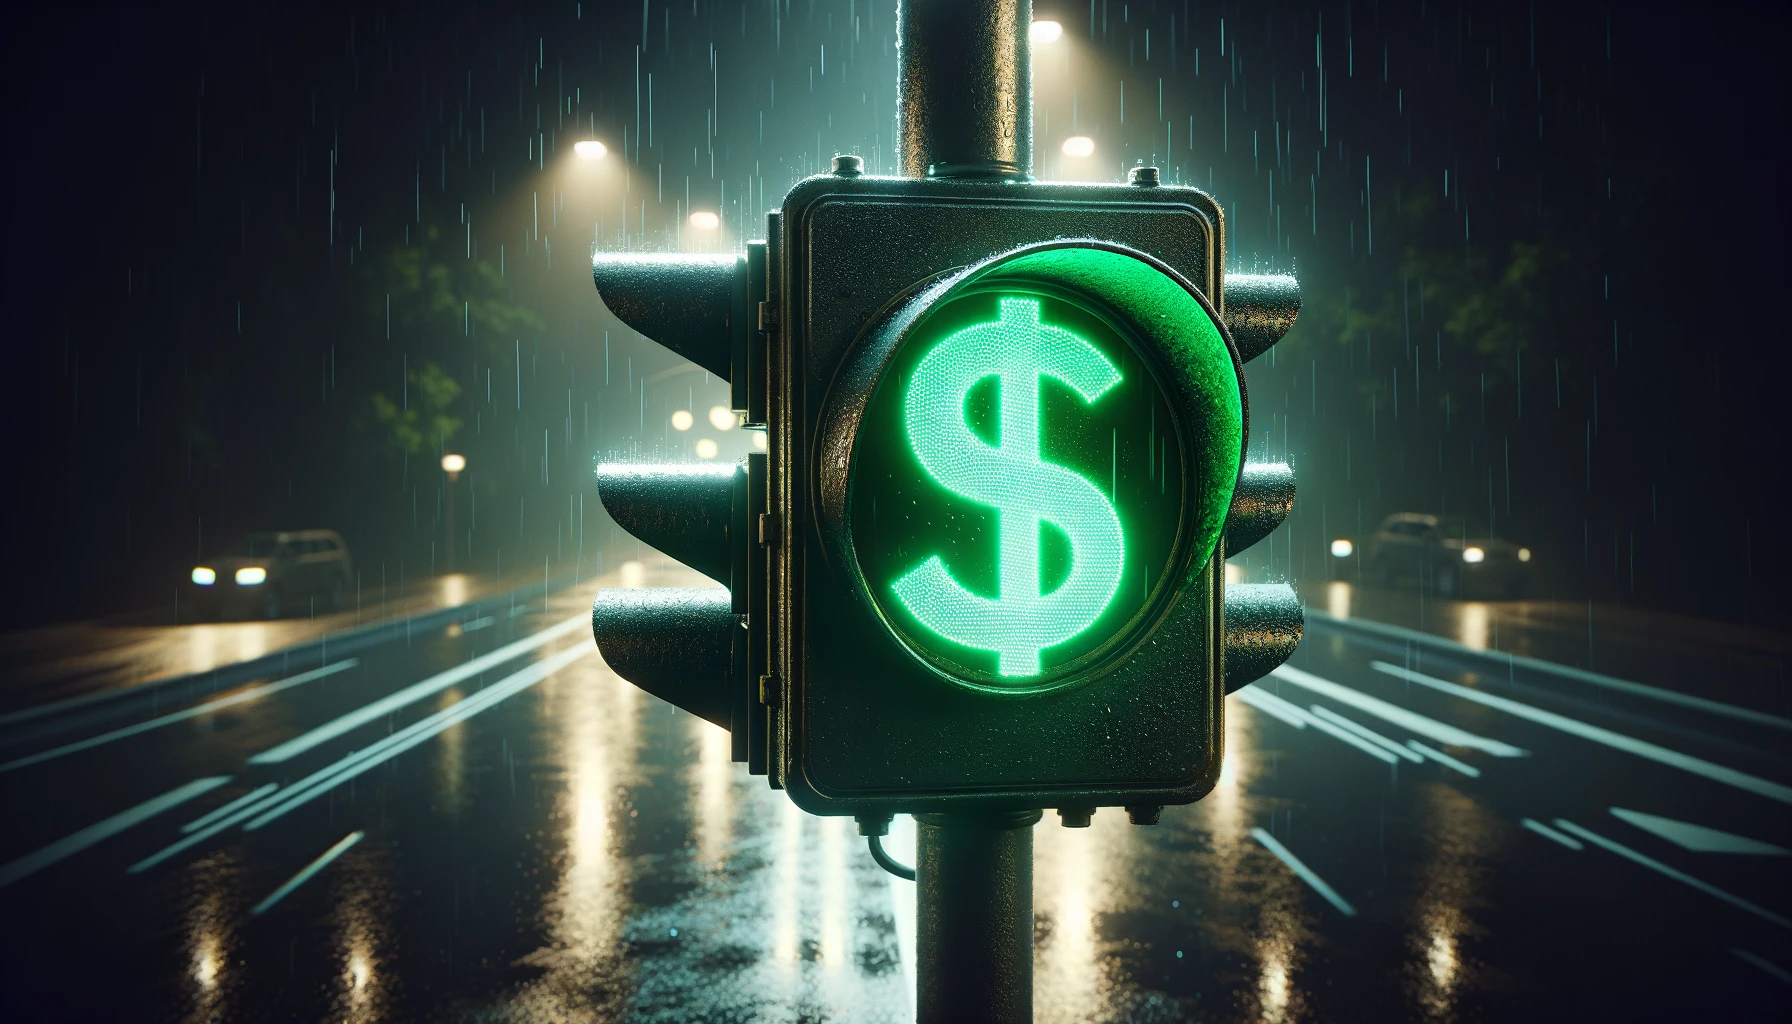 Ilustração de um semáforo de trânsito com um "$" na luz verde acesa.